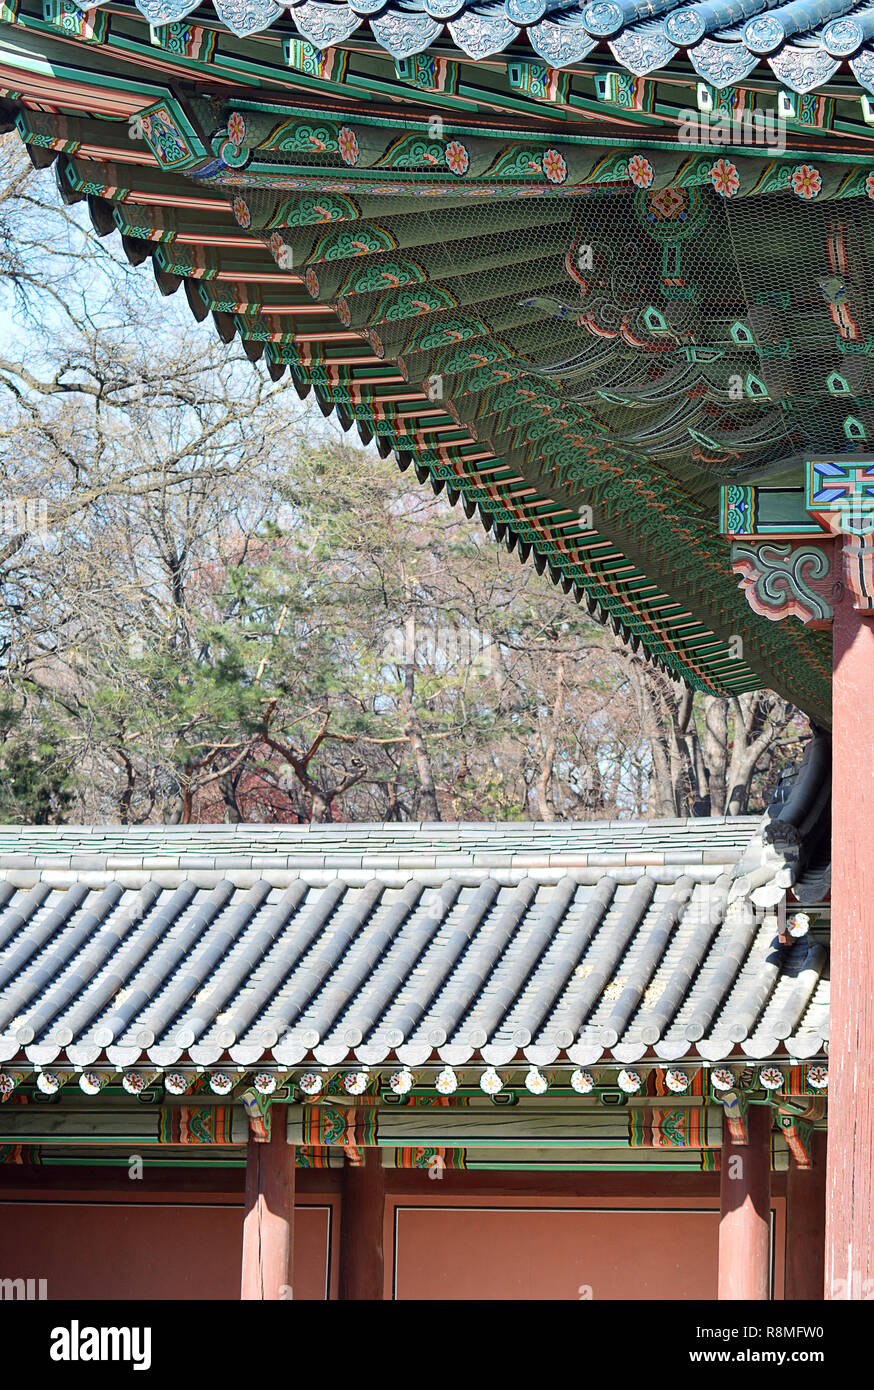 Tetti Hipped, piastrelle e la decorazione, tipico coreano sontuosa architettura al palazzo di Changdeokgung, Seul. Corea Foto Stock